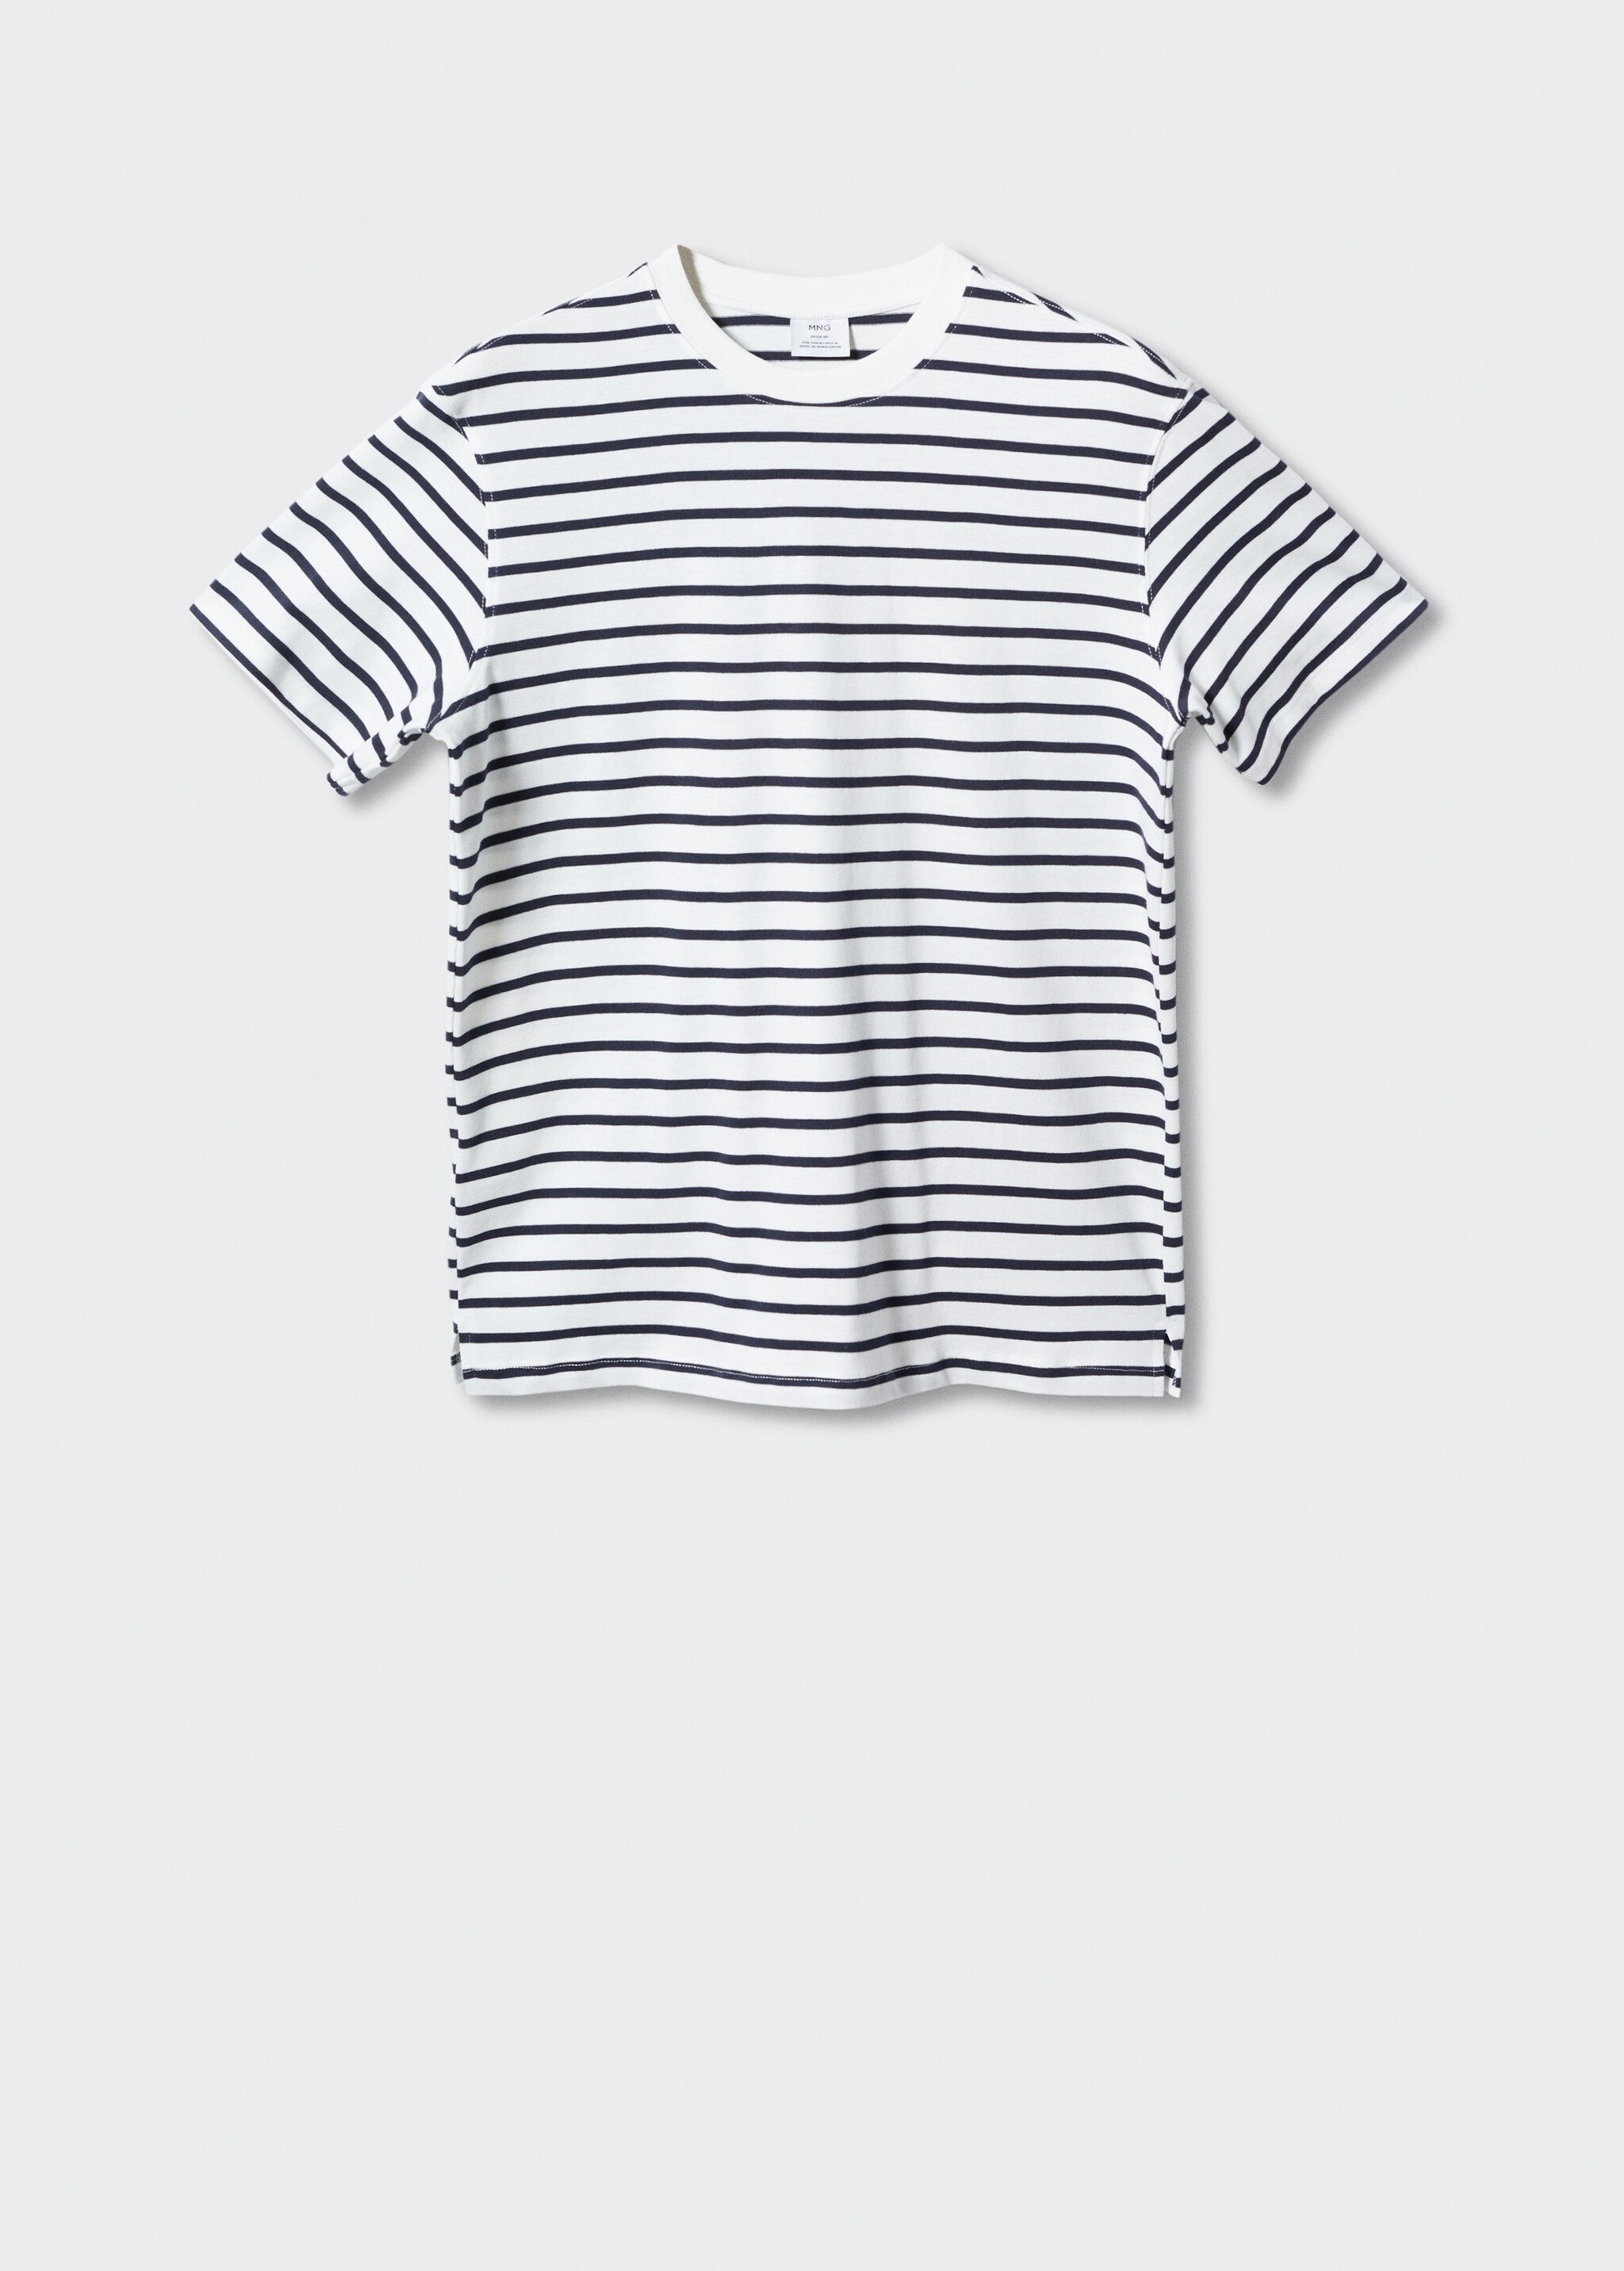 Camiseta algodón rayas - Artículo sin modelo